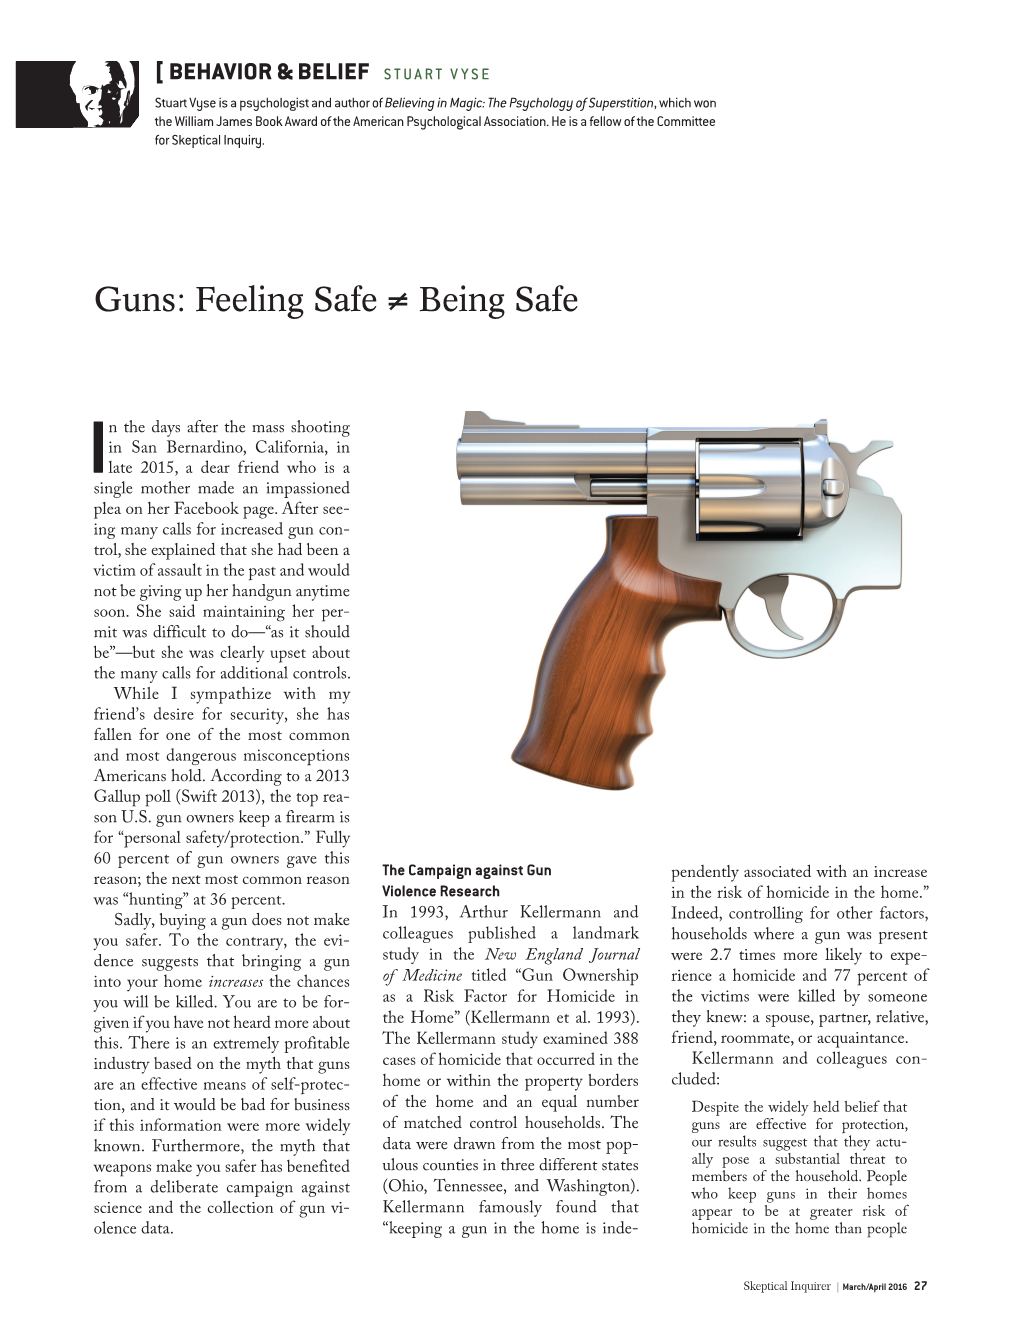 Guns: Feeling Safe ≠ Being Safe